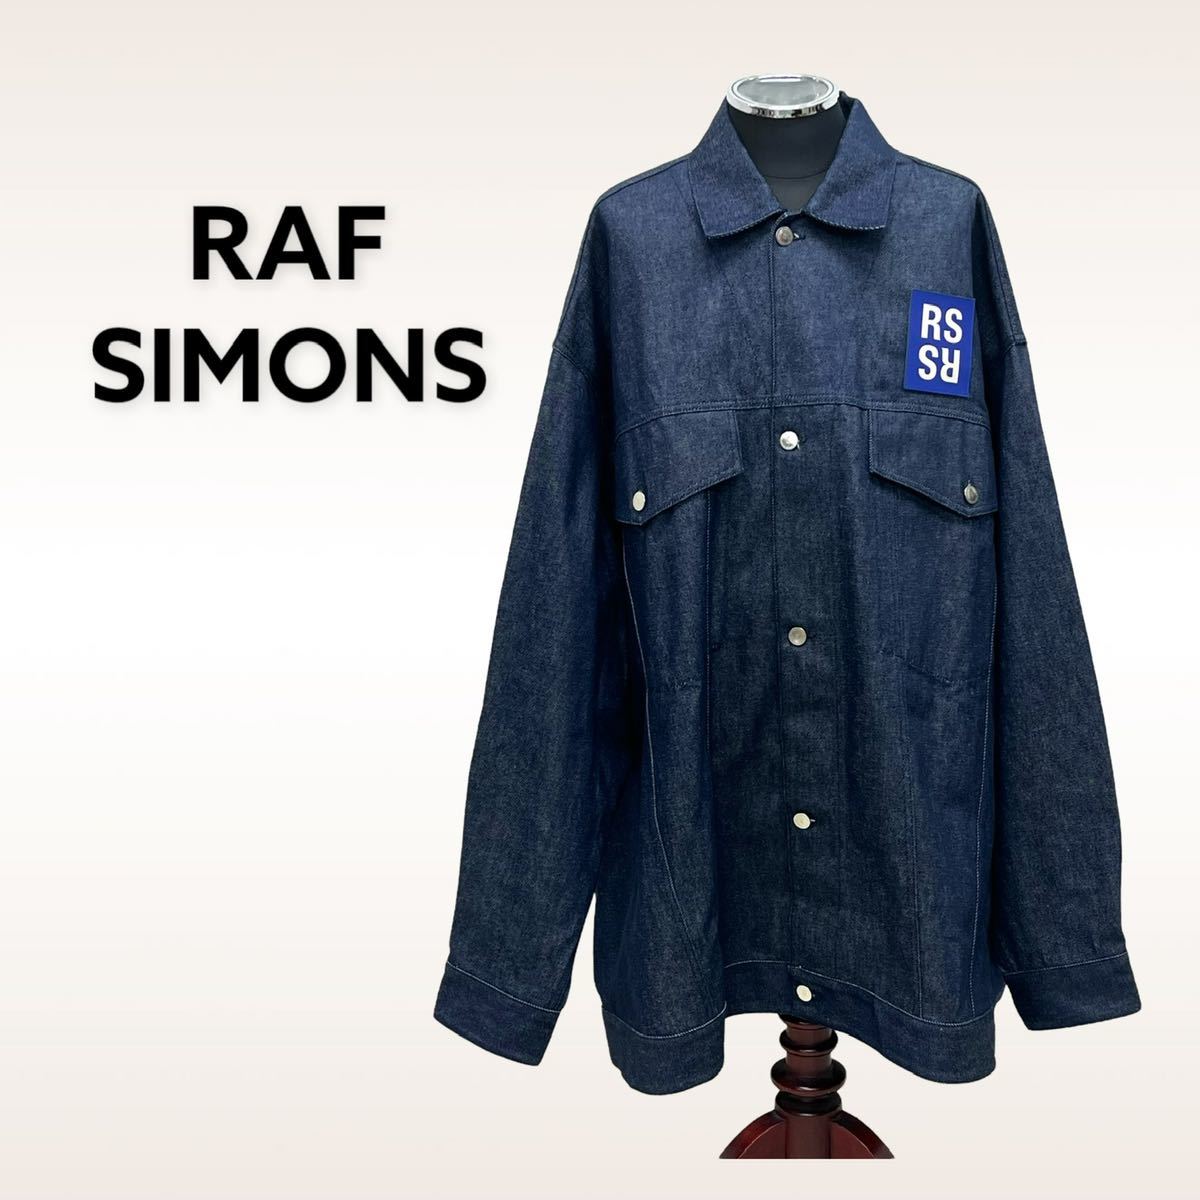 特価 RAF 美品 SIMONS 212-M723 デニムジャケット オーバーサイズ ラバーロゴワッペン jacket denim Oversized 21AW ラフシモンズ その他